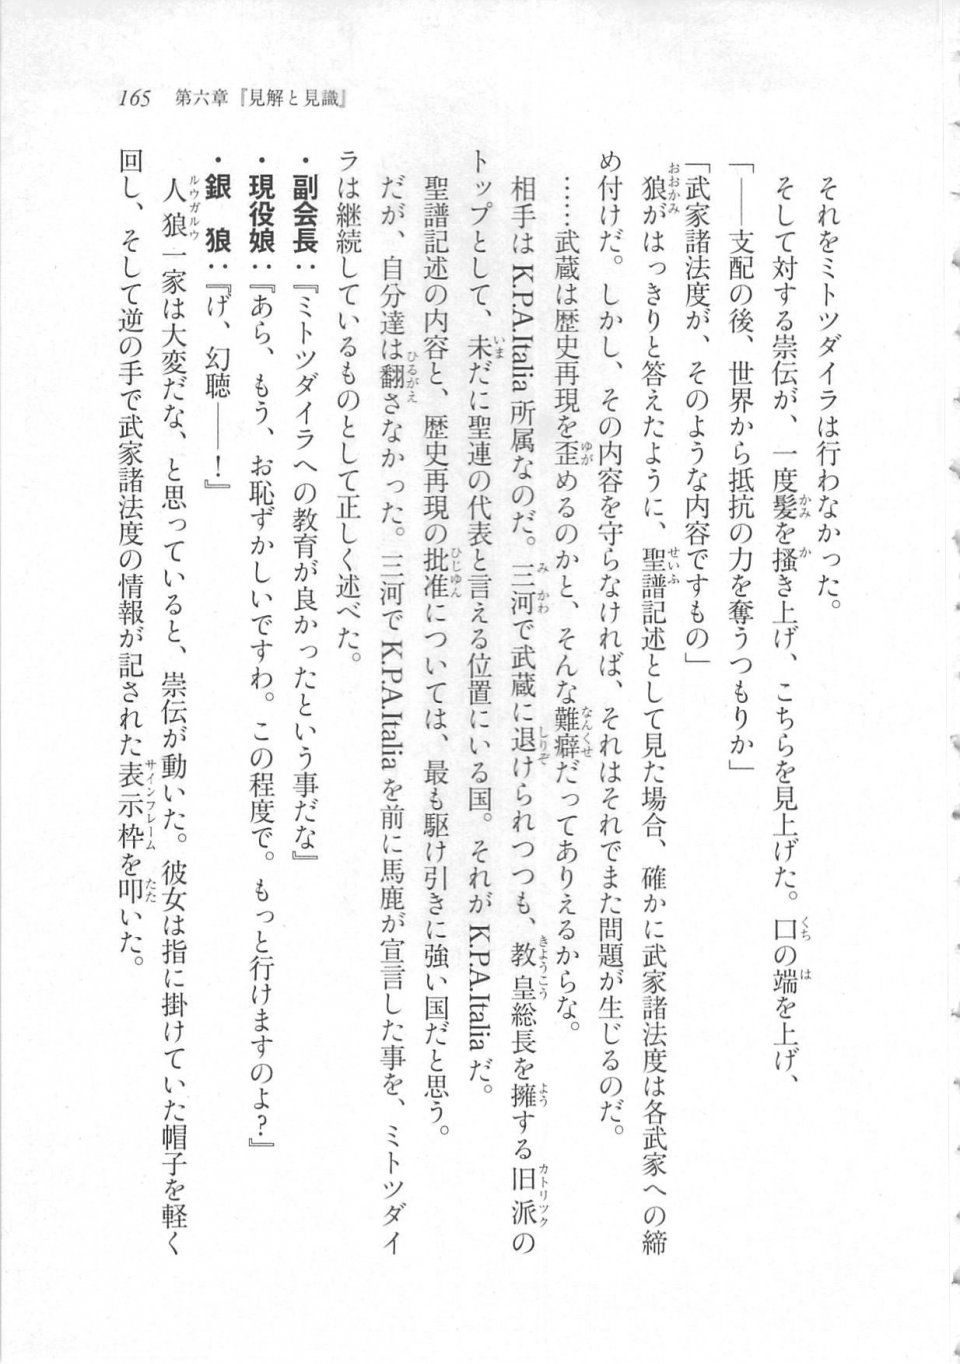 Kyoukai Senjou no Horizon LN Sidestory Vol 3 - Photo #169